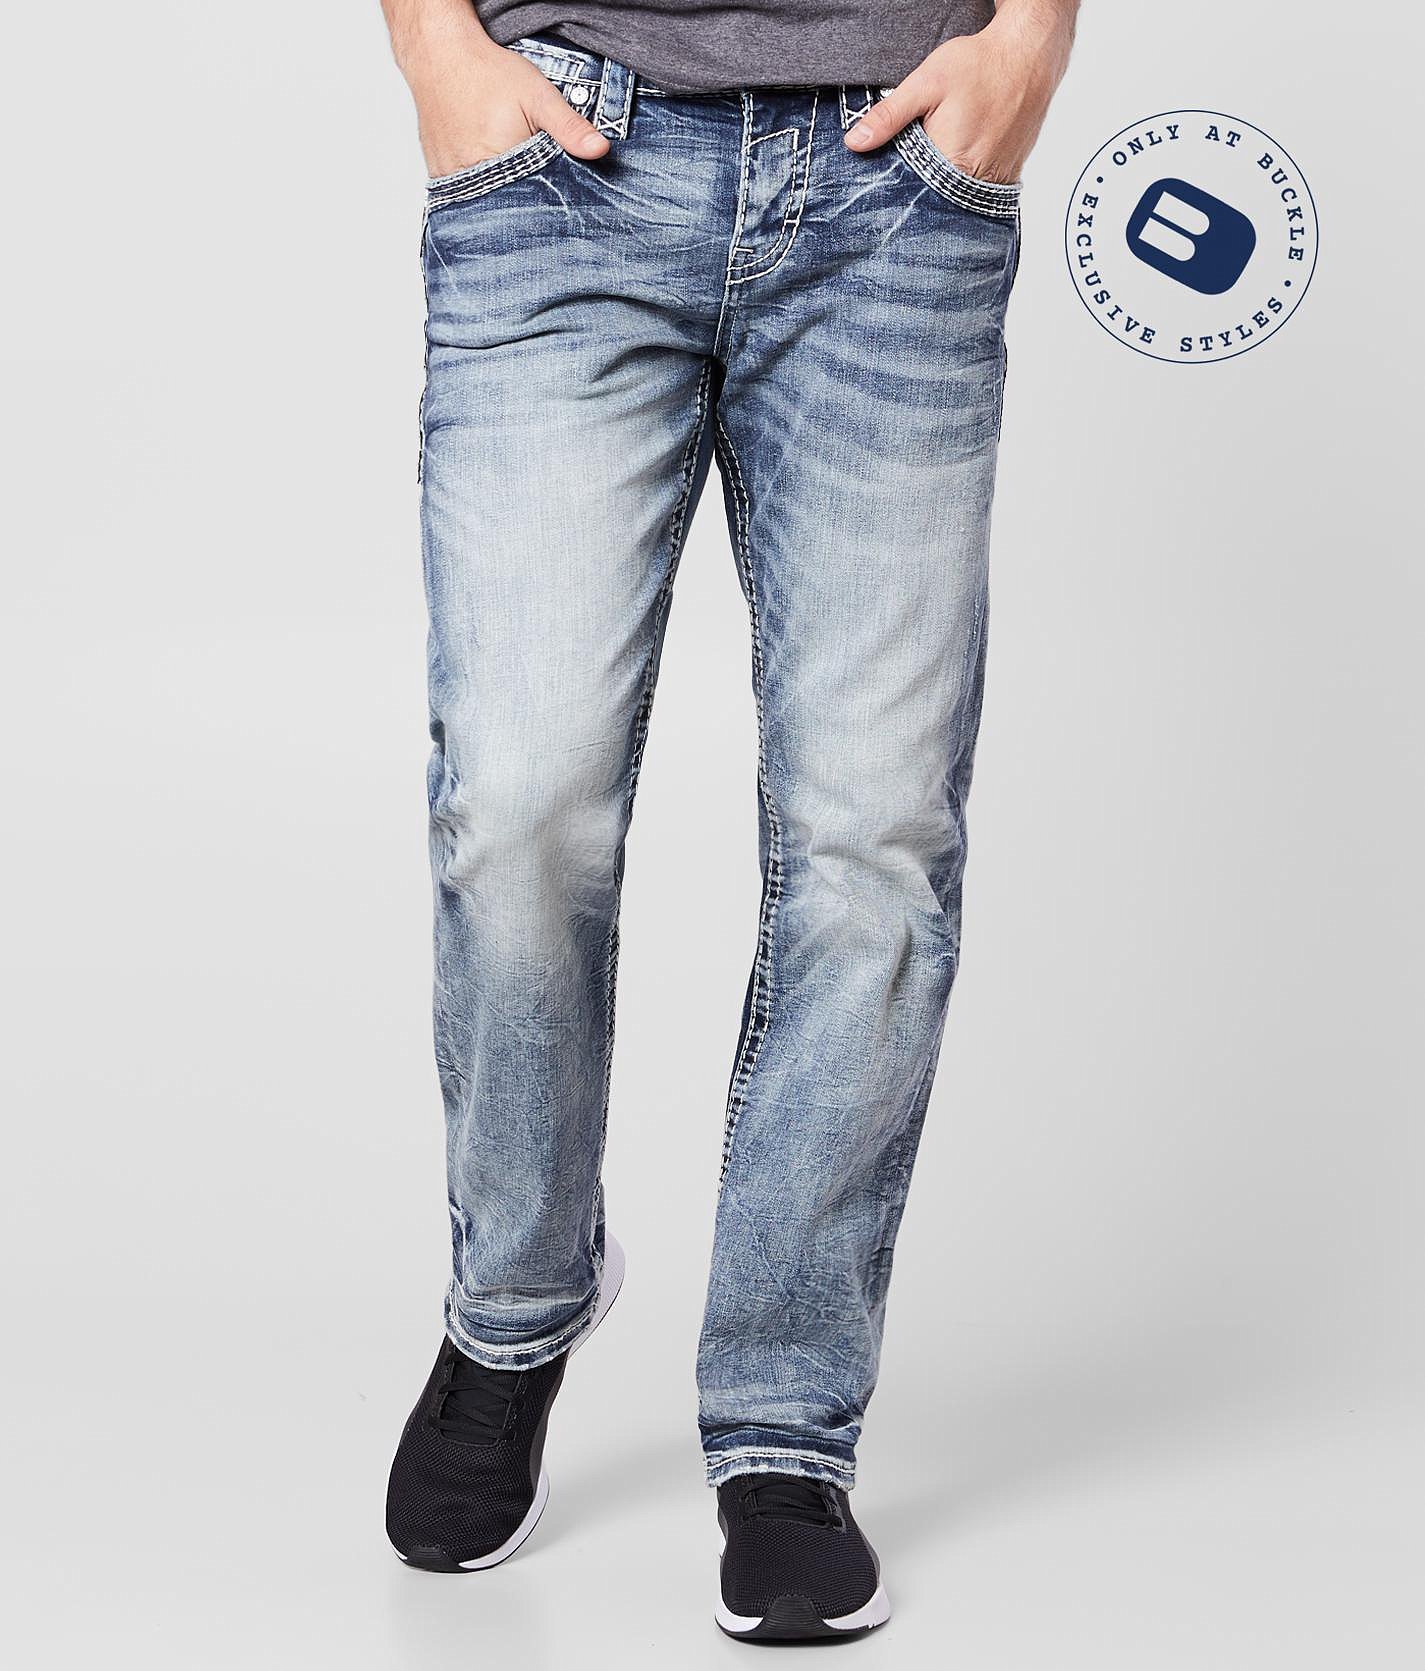 wrangler flex jeans mens